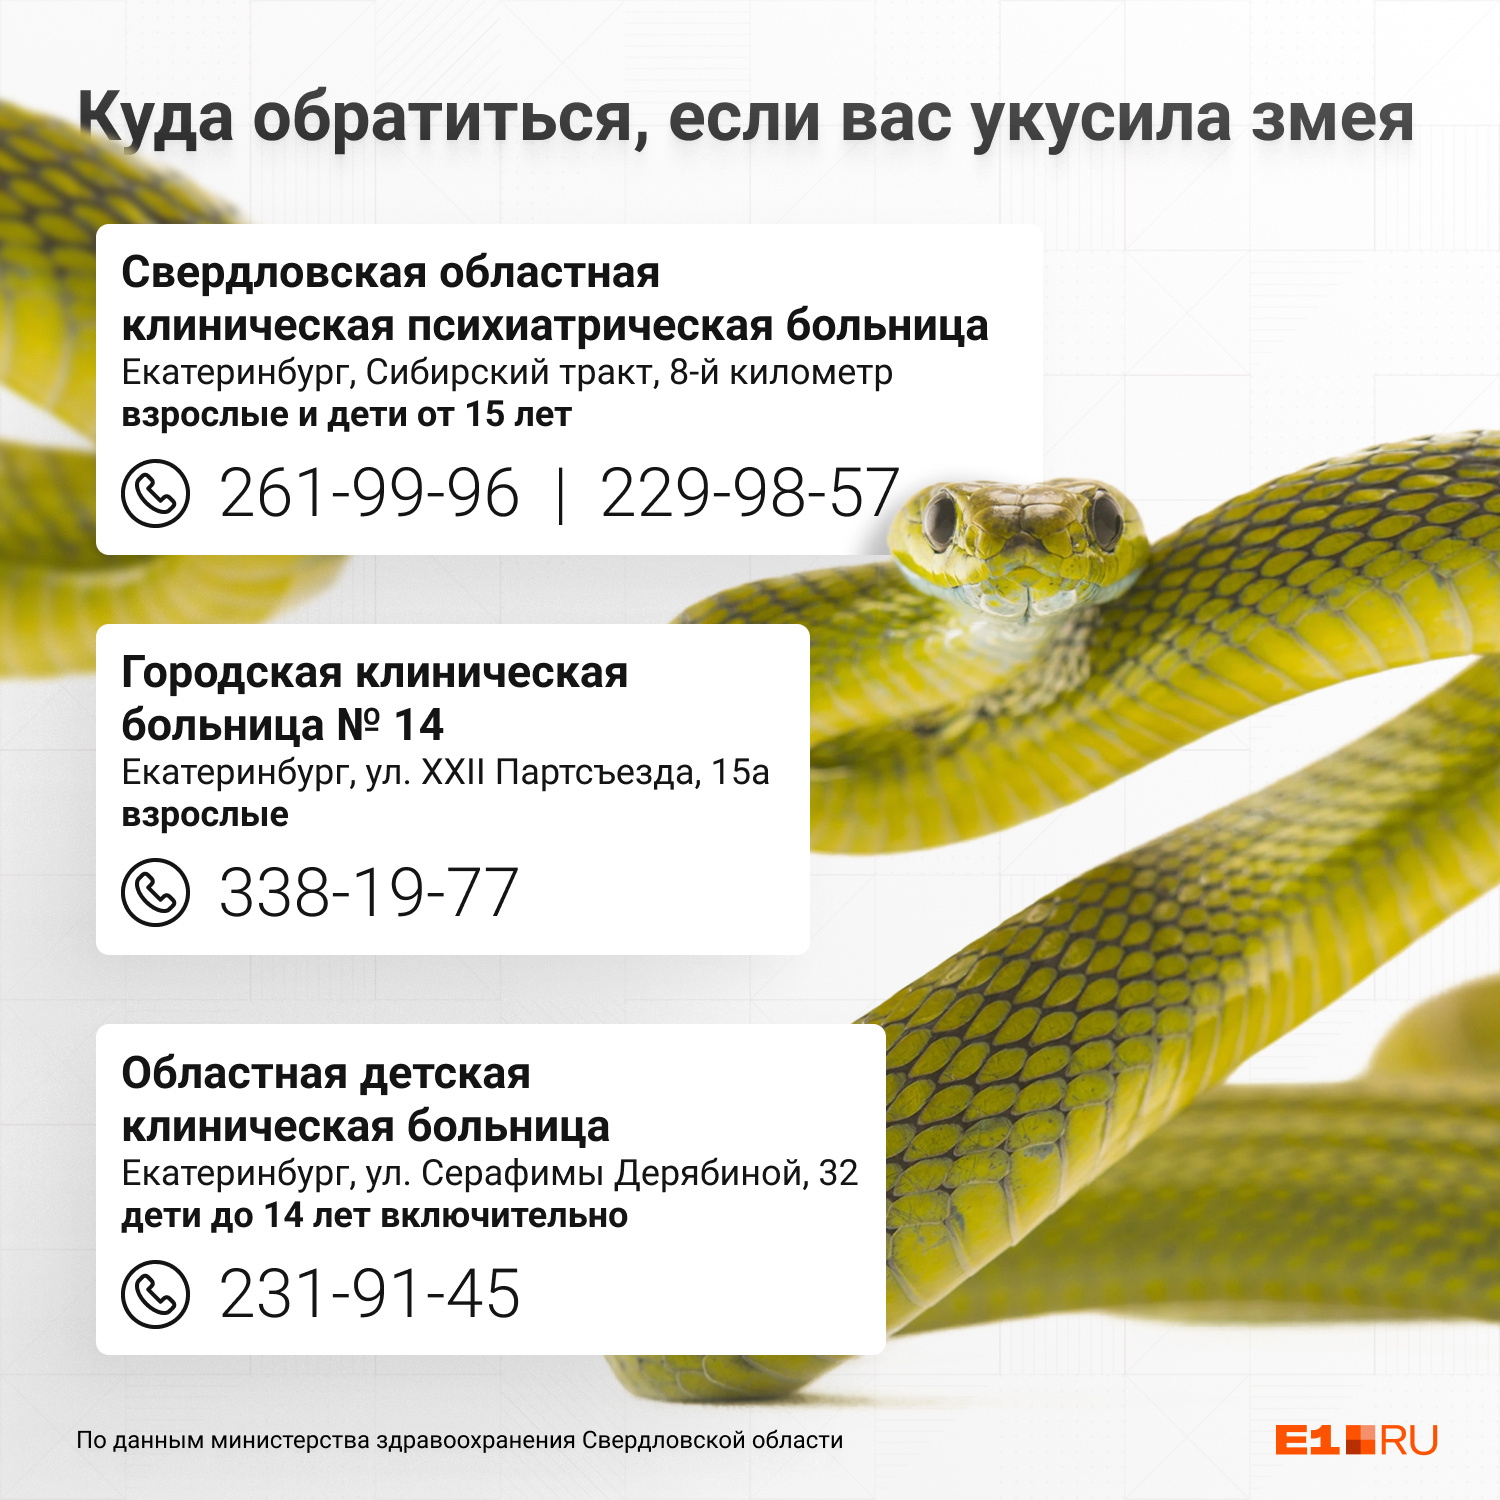 Адреса и телефоны больниц, куда нужно обращаться с укусом змеи